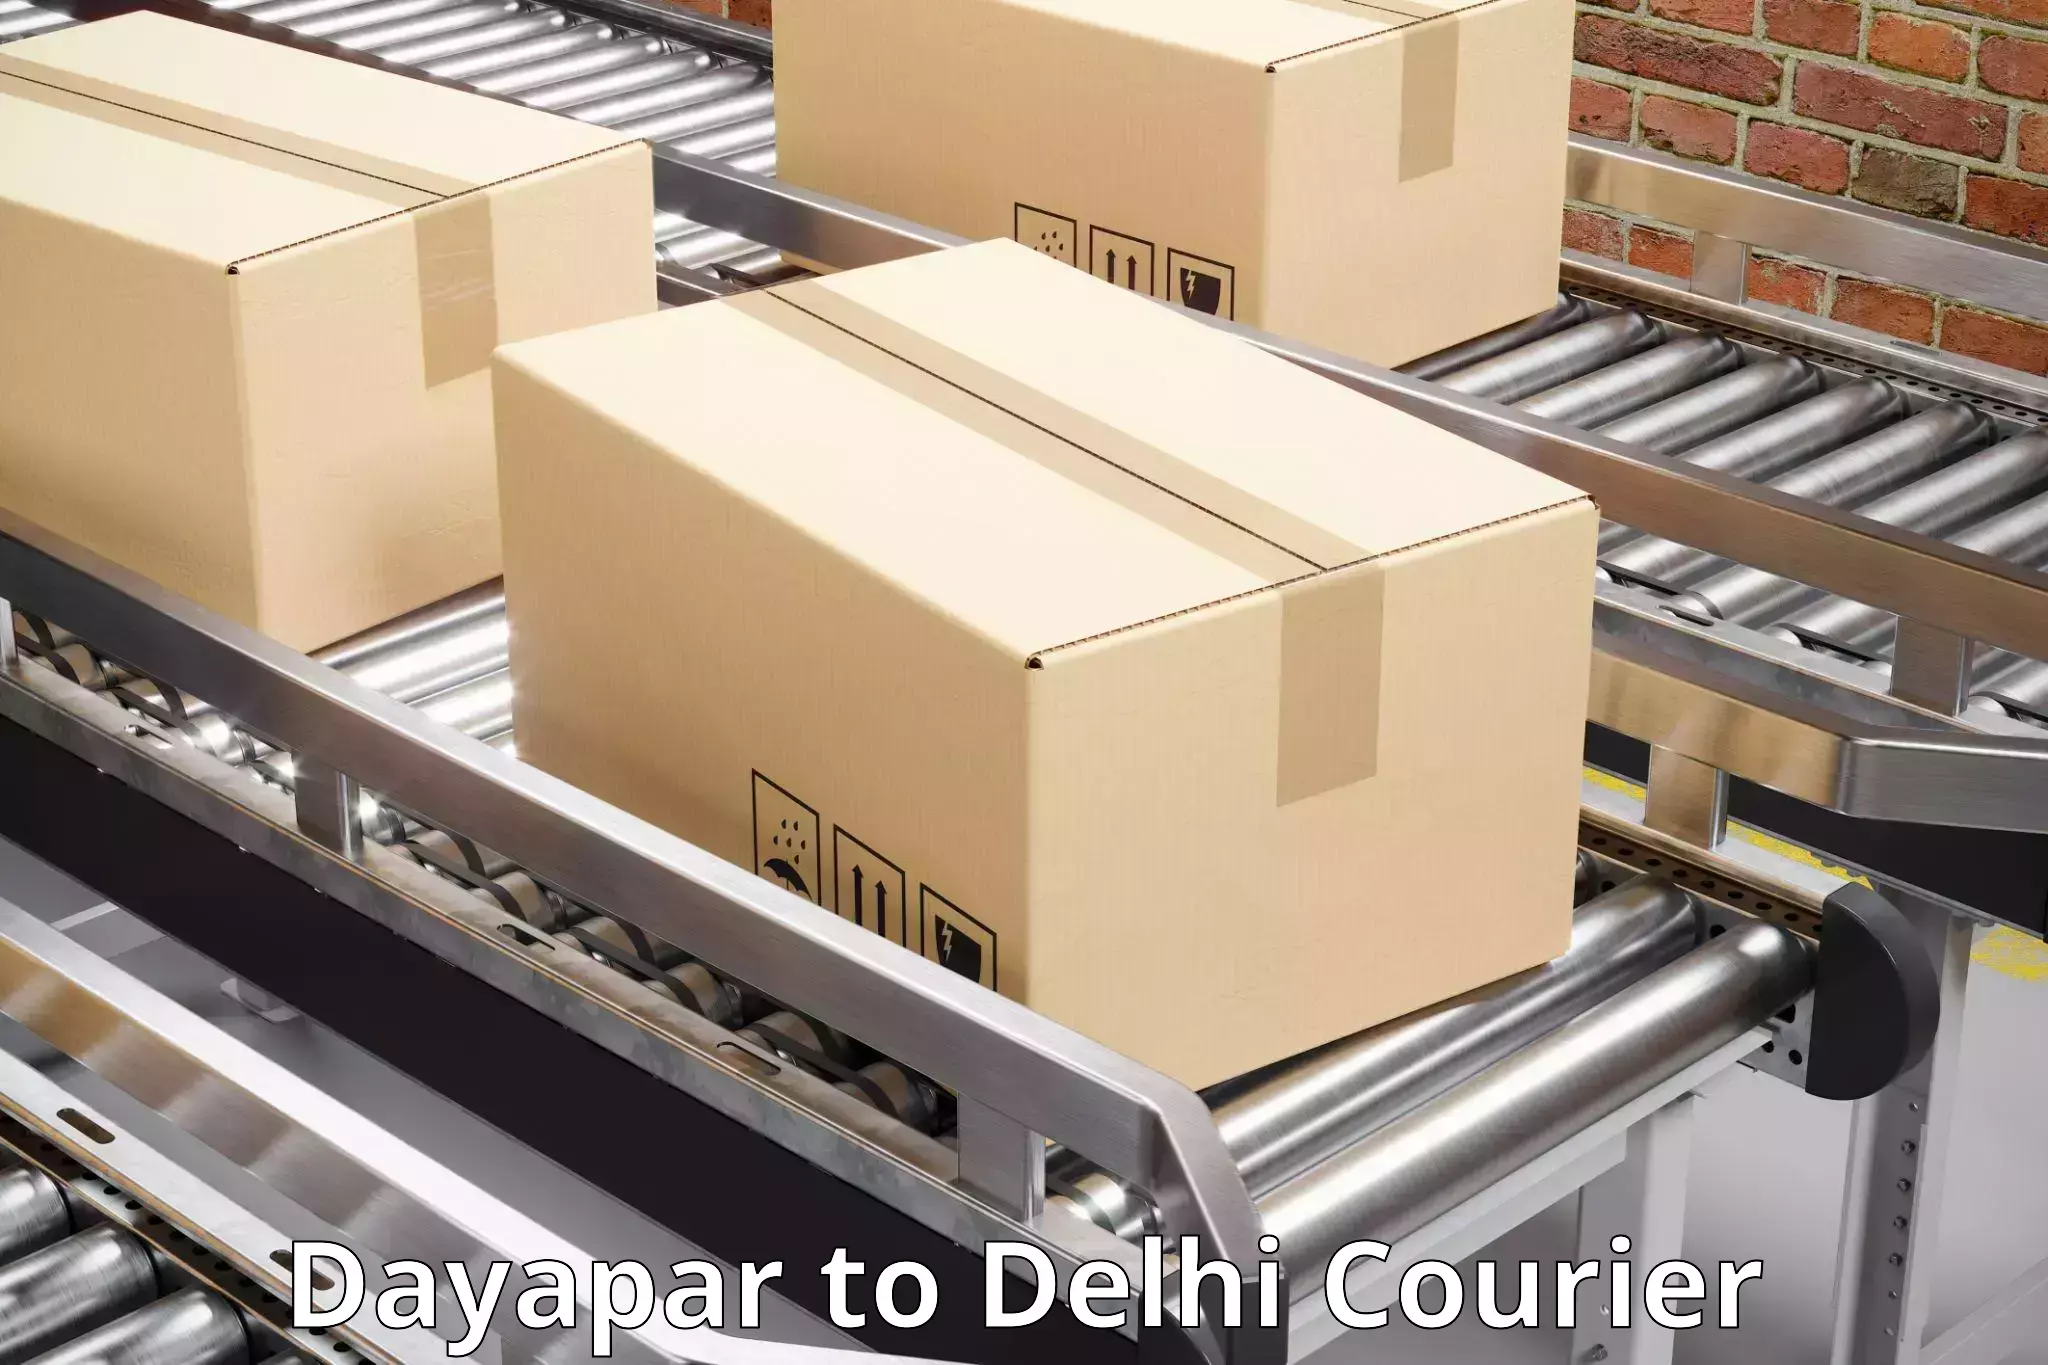 Weekend courier service Dayapar to Jawaharlal Nehru University New Delhi